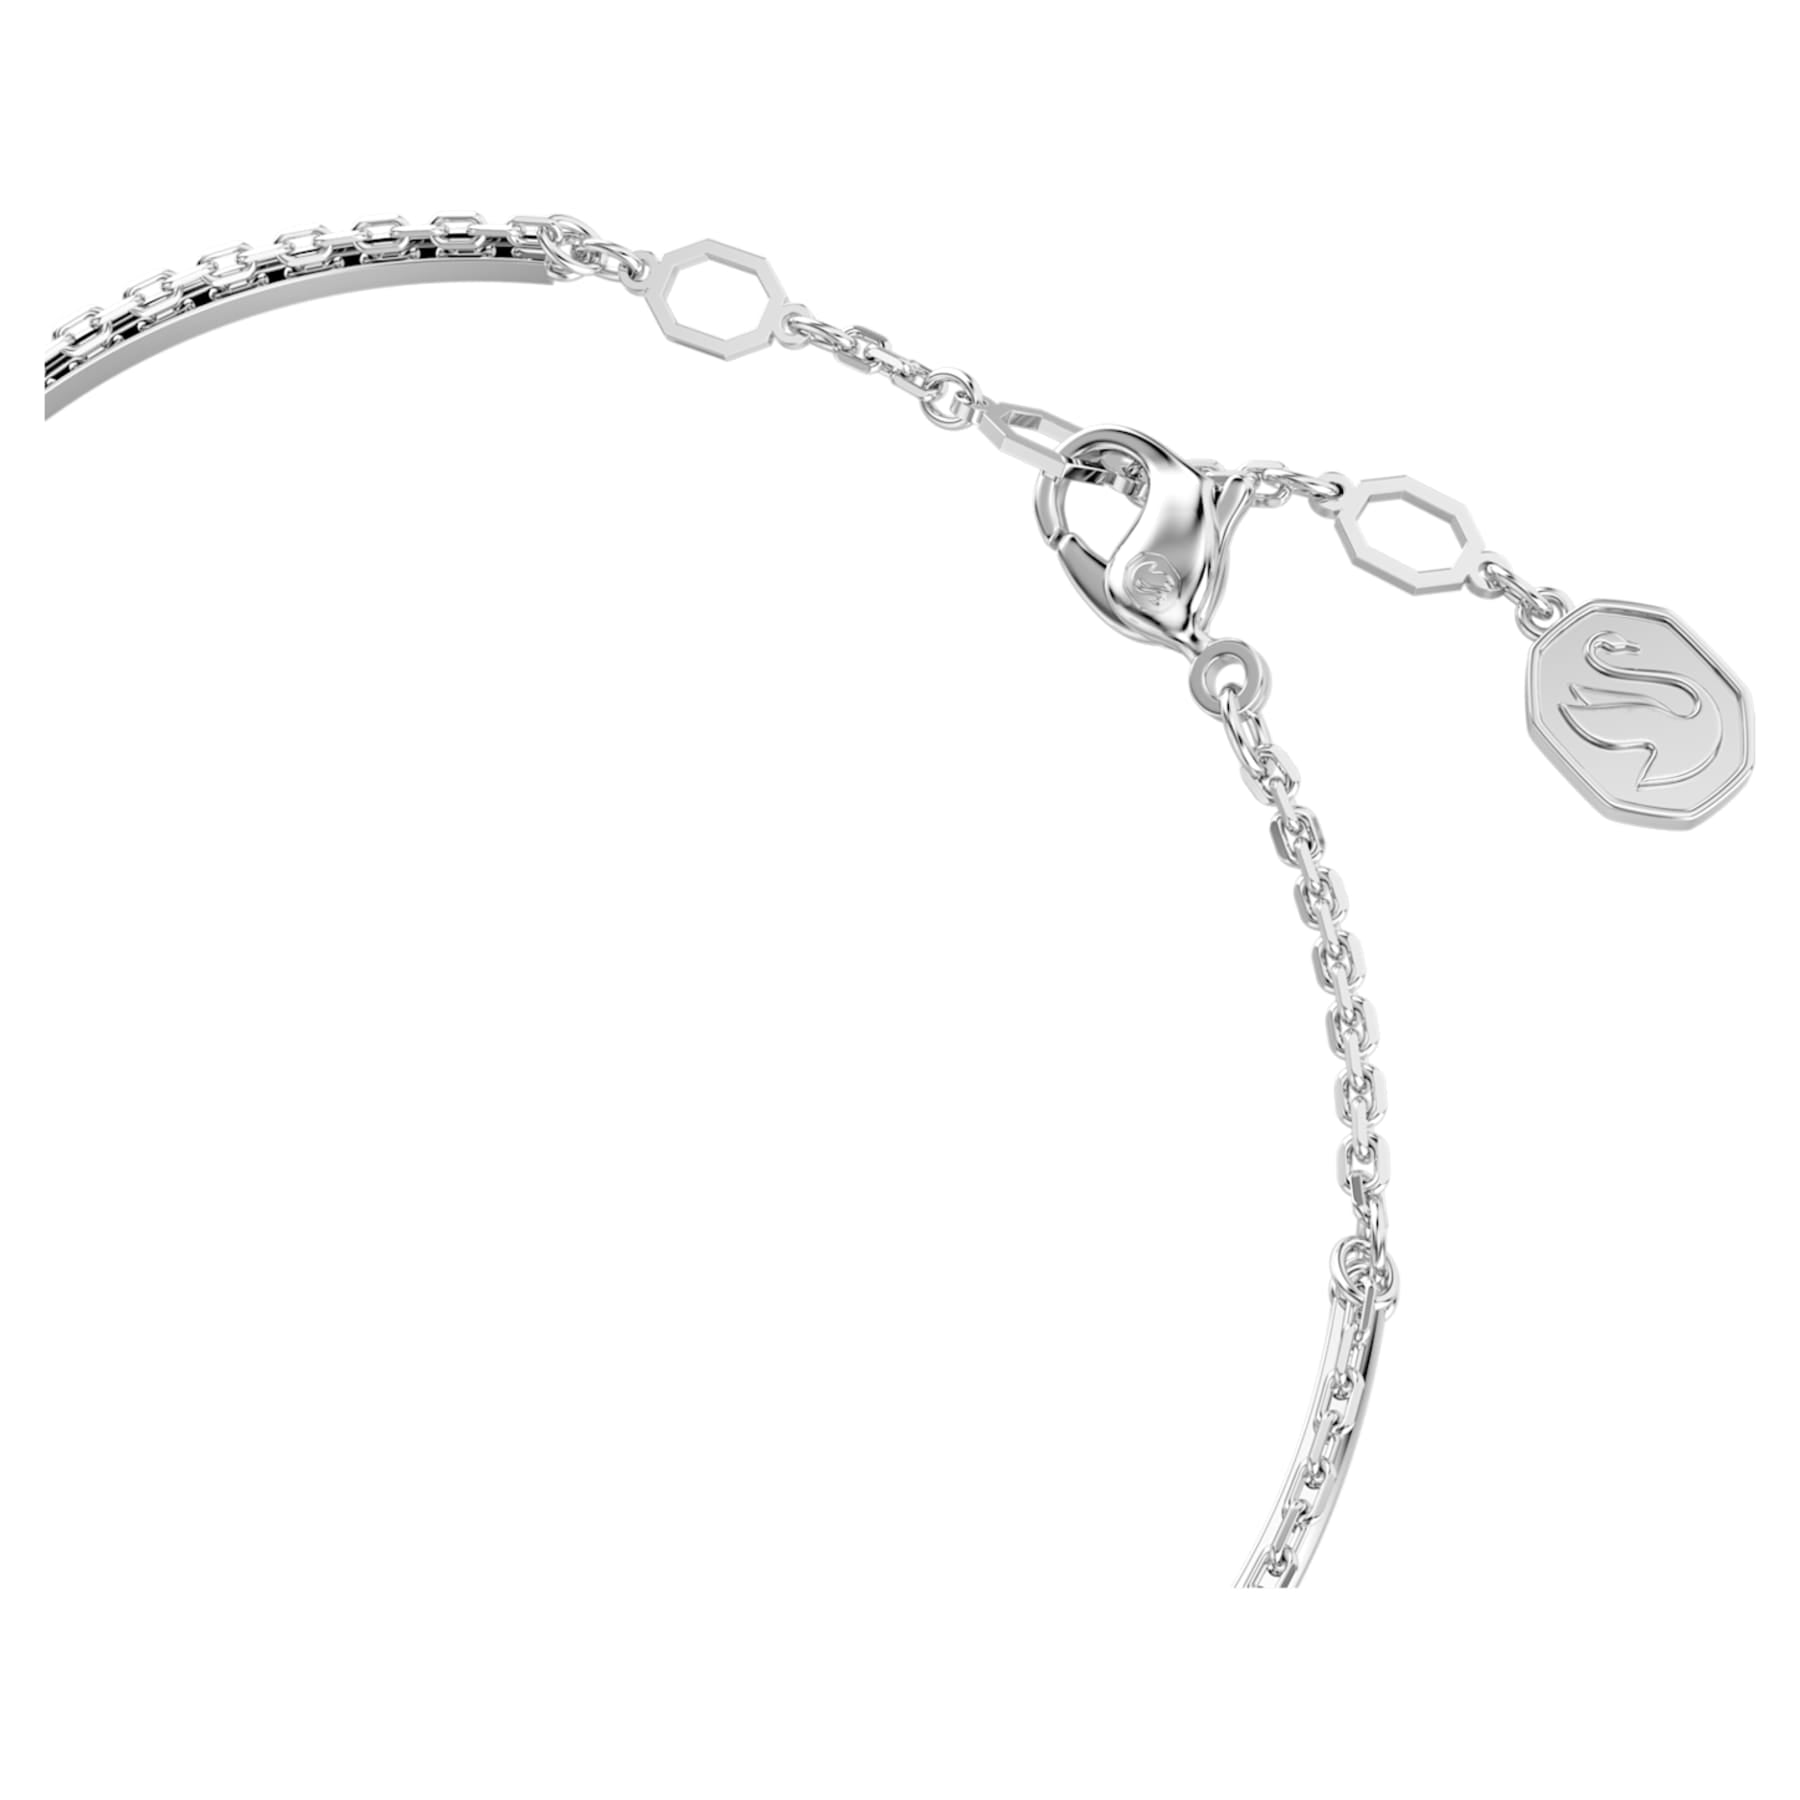 Meteora - White Silver - Bangle Bracelet - Swarovski